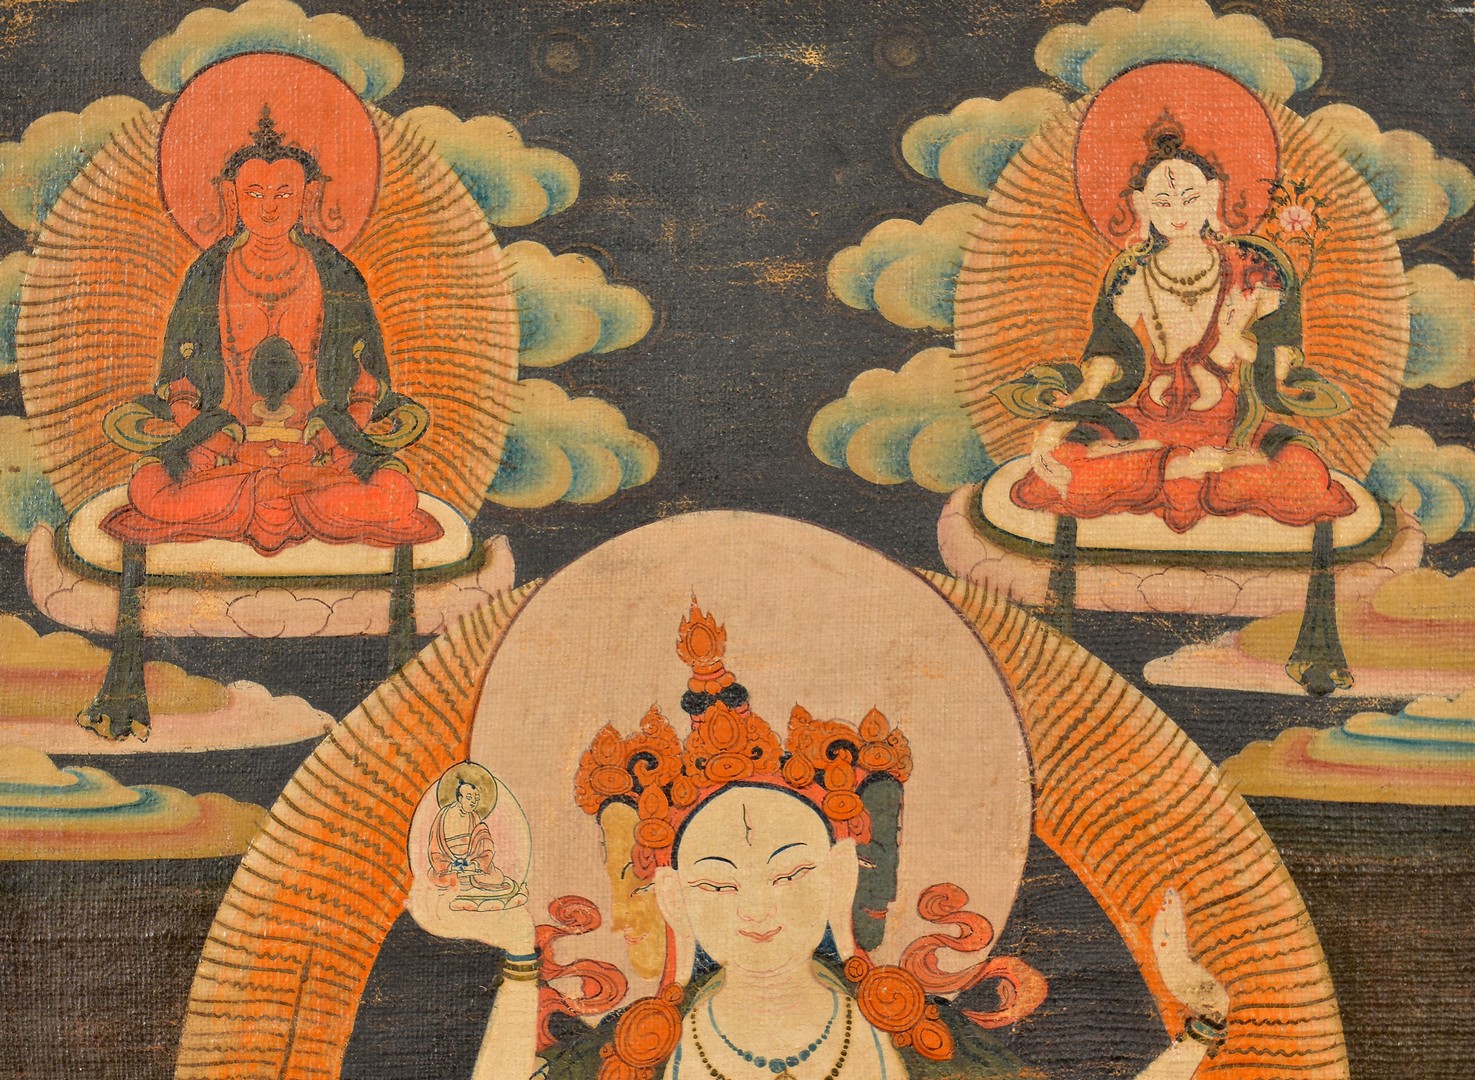 Lot 32: Tibetan Thangka, Ushnishavijaya